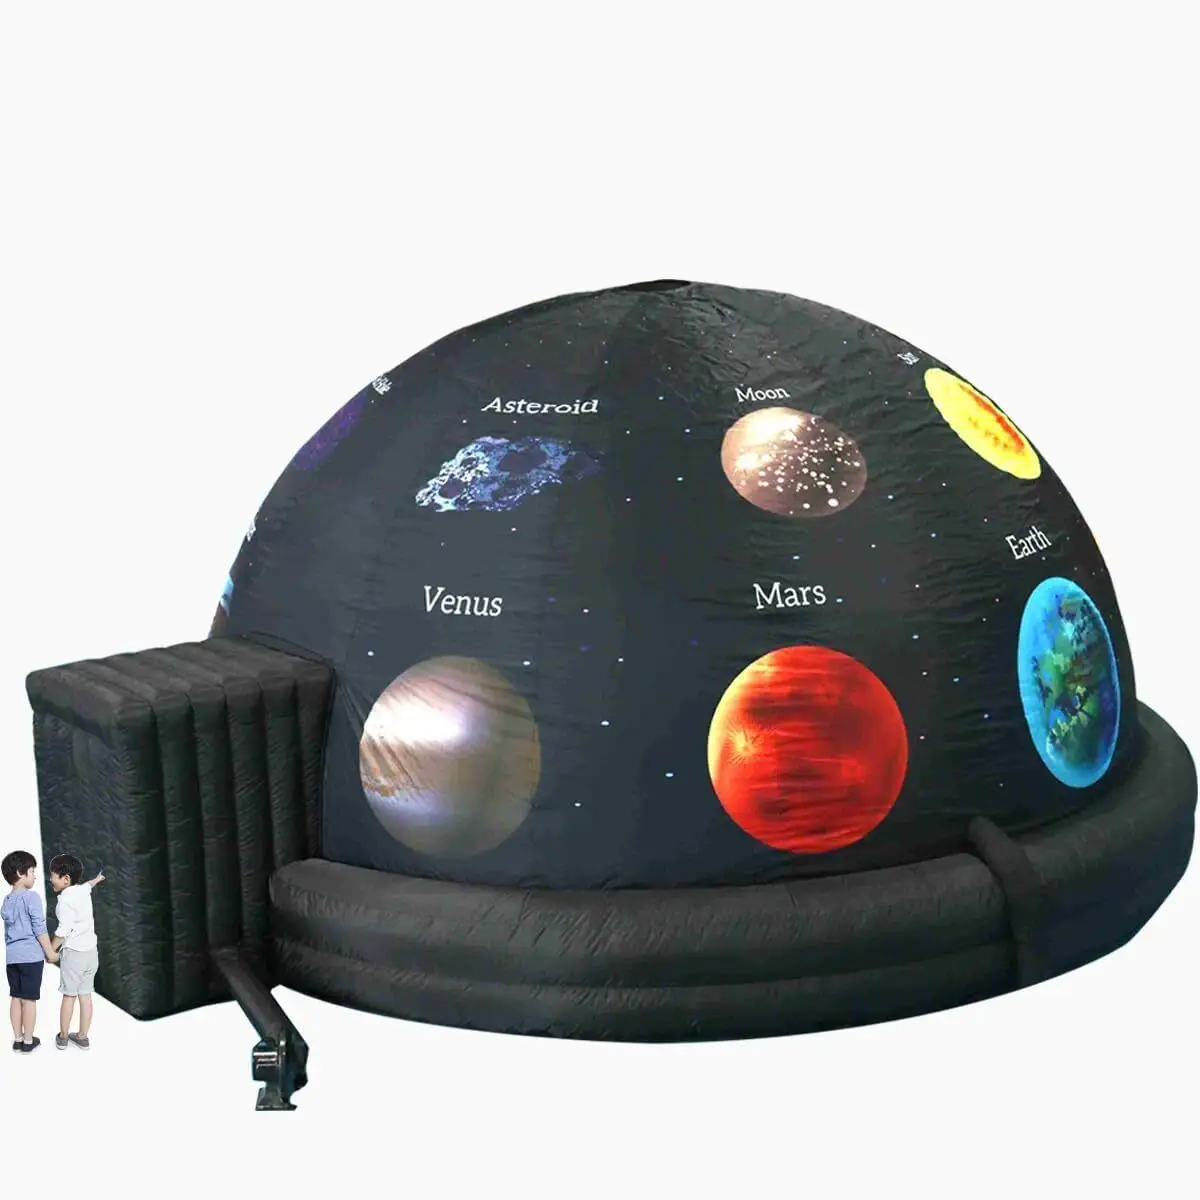 Portable numérique gonflable planétarium projecteur planétarium école astronomie projection tente dôme structure gonflable